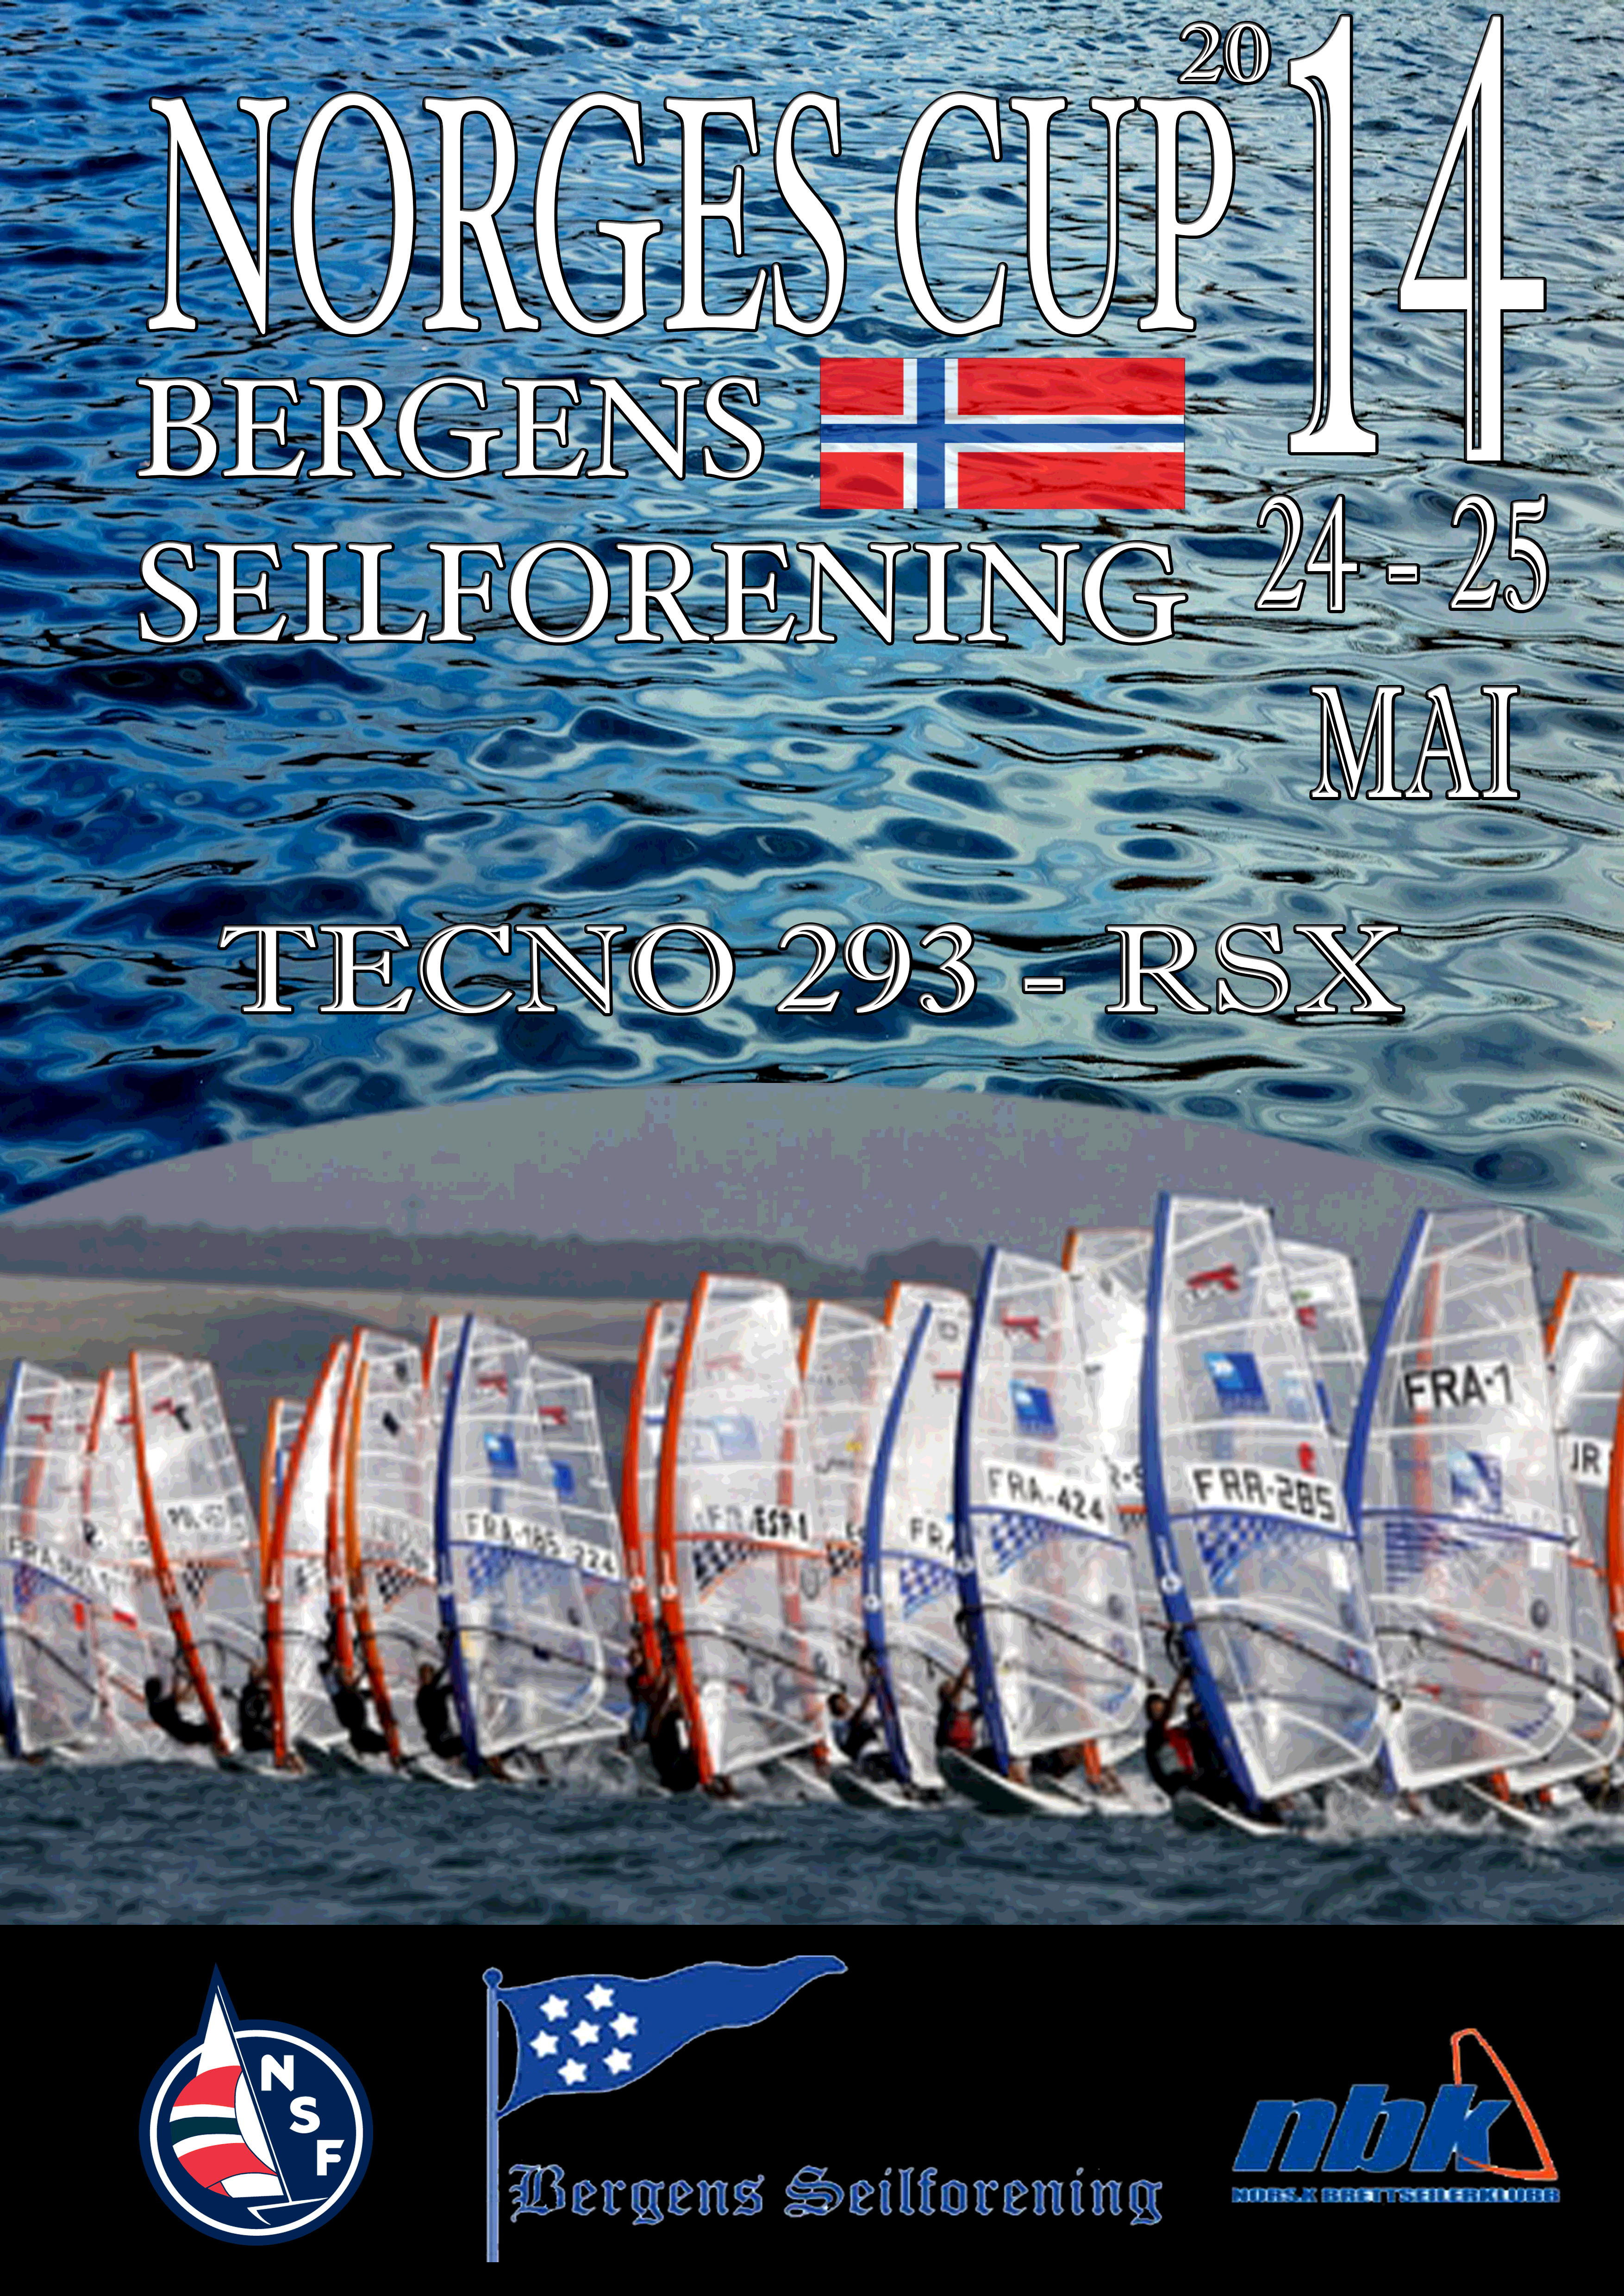 Husk påmelding til BIC / RS:X NC i Bergen neste helg.